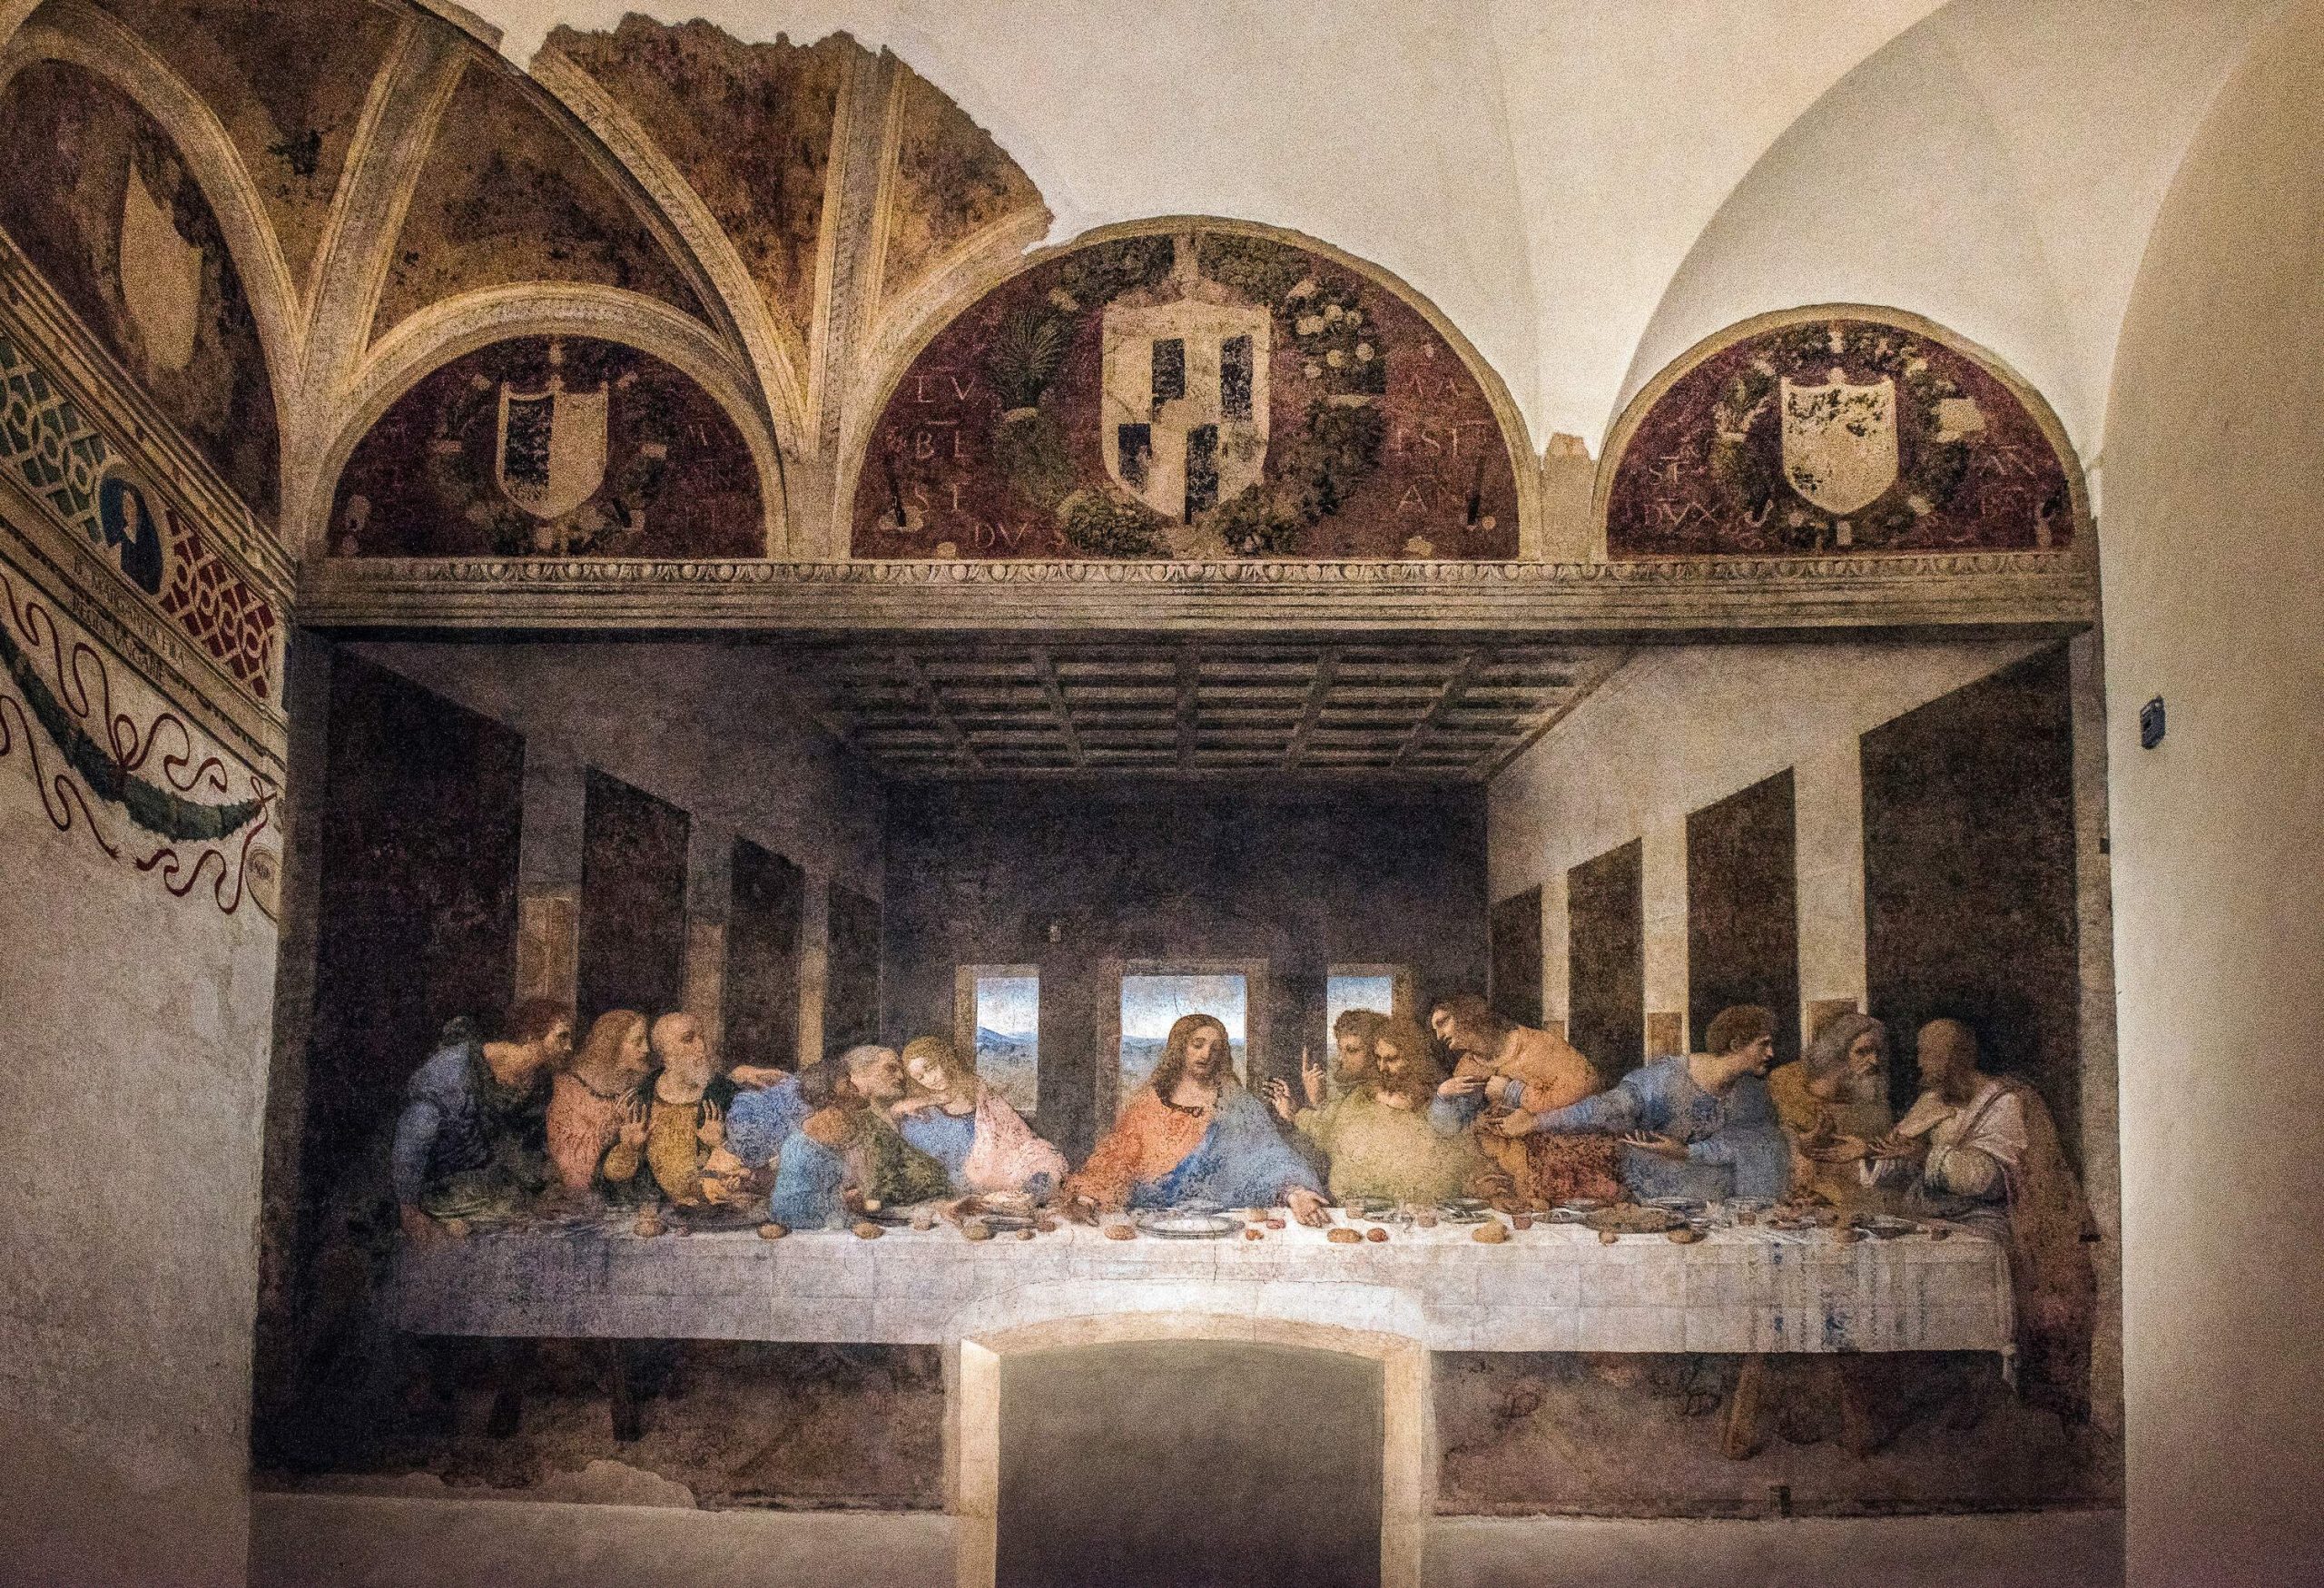 A mural of the Last Supper by Leonardo Da Vinci.